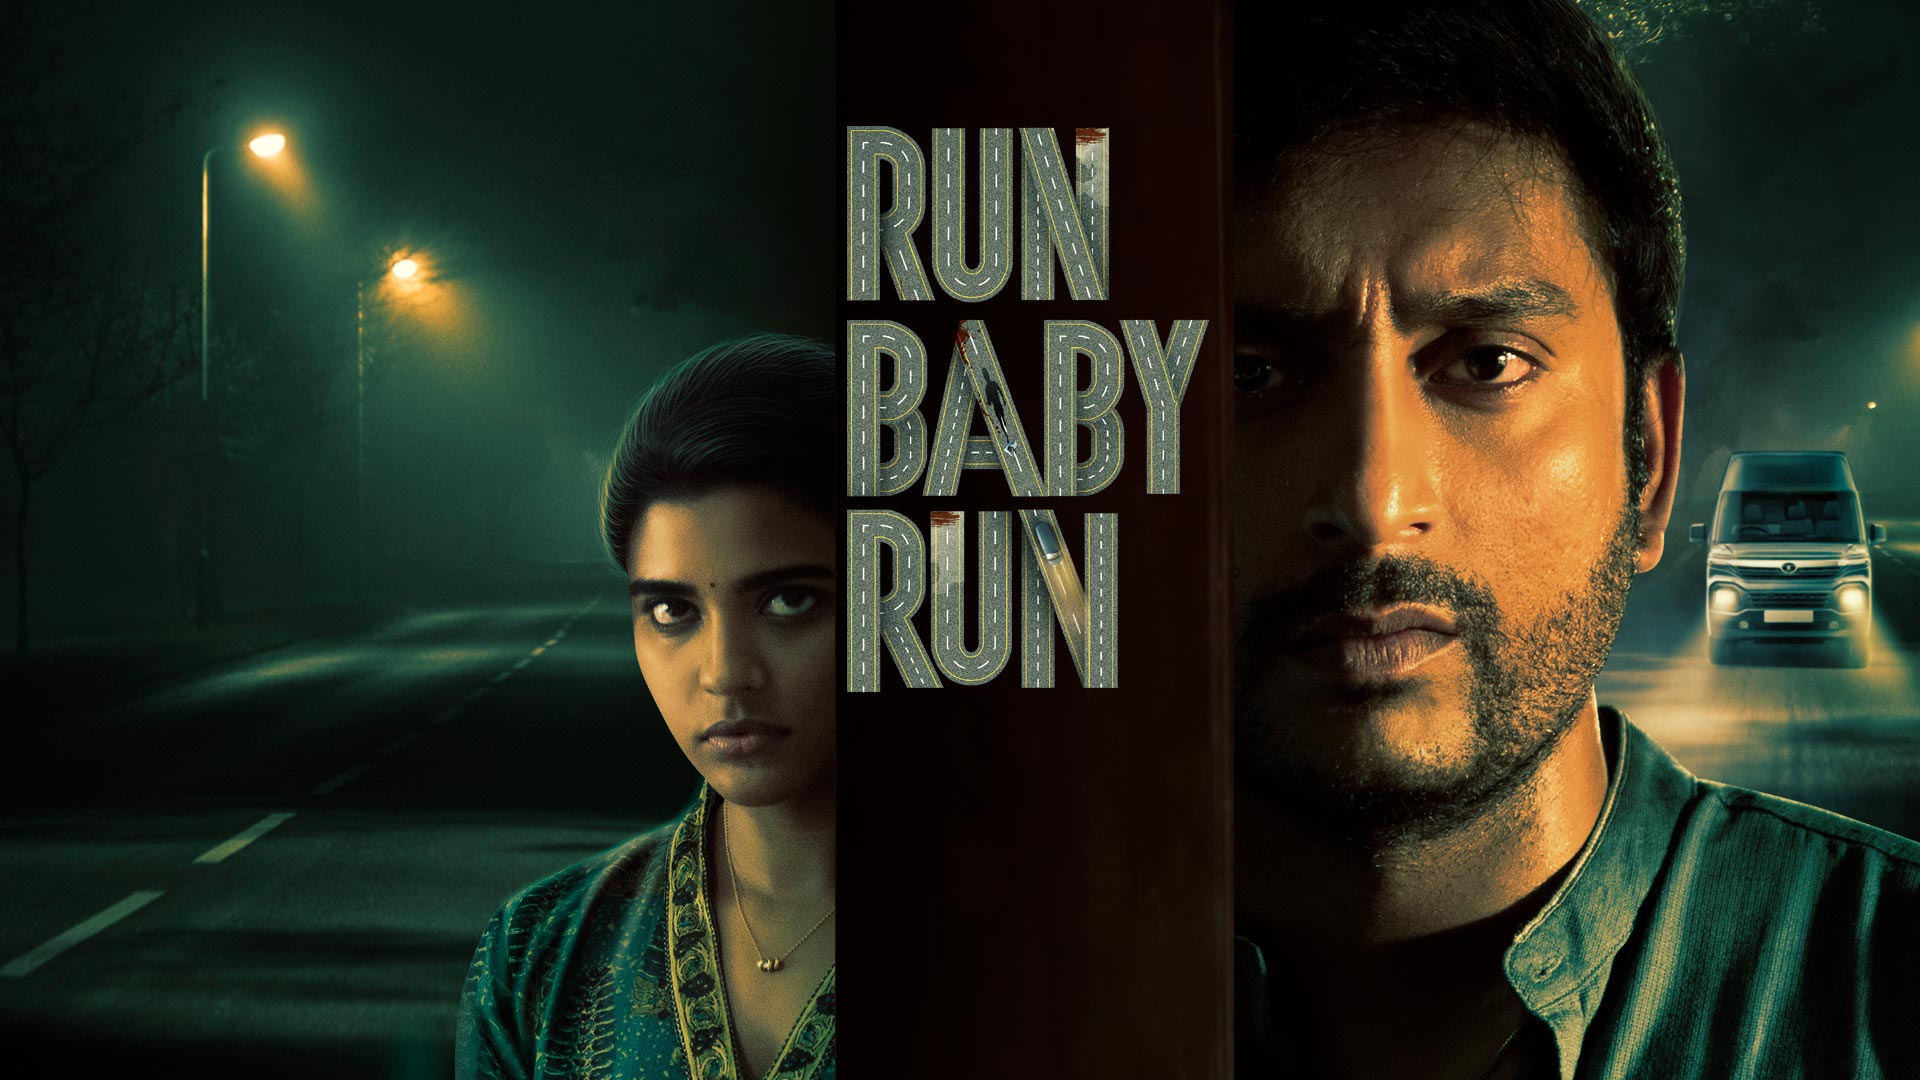 Watch Movie Run Baby Run Only on Watcho